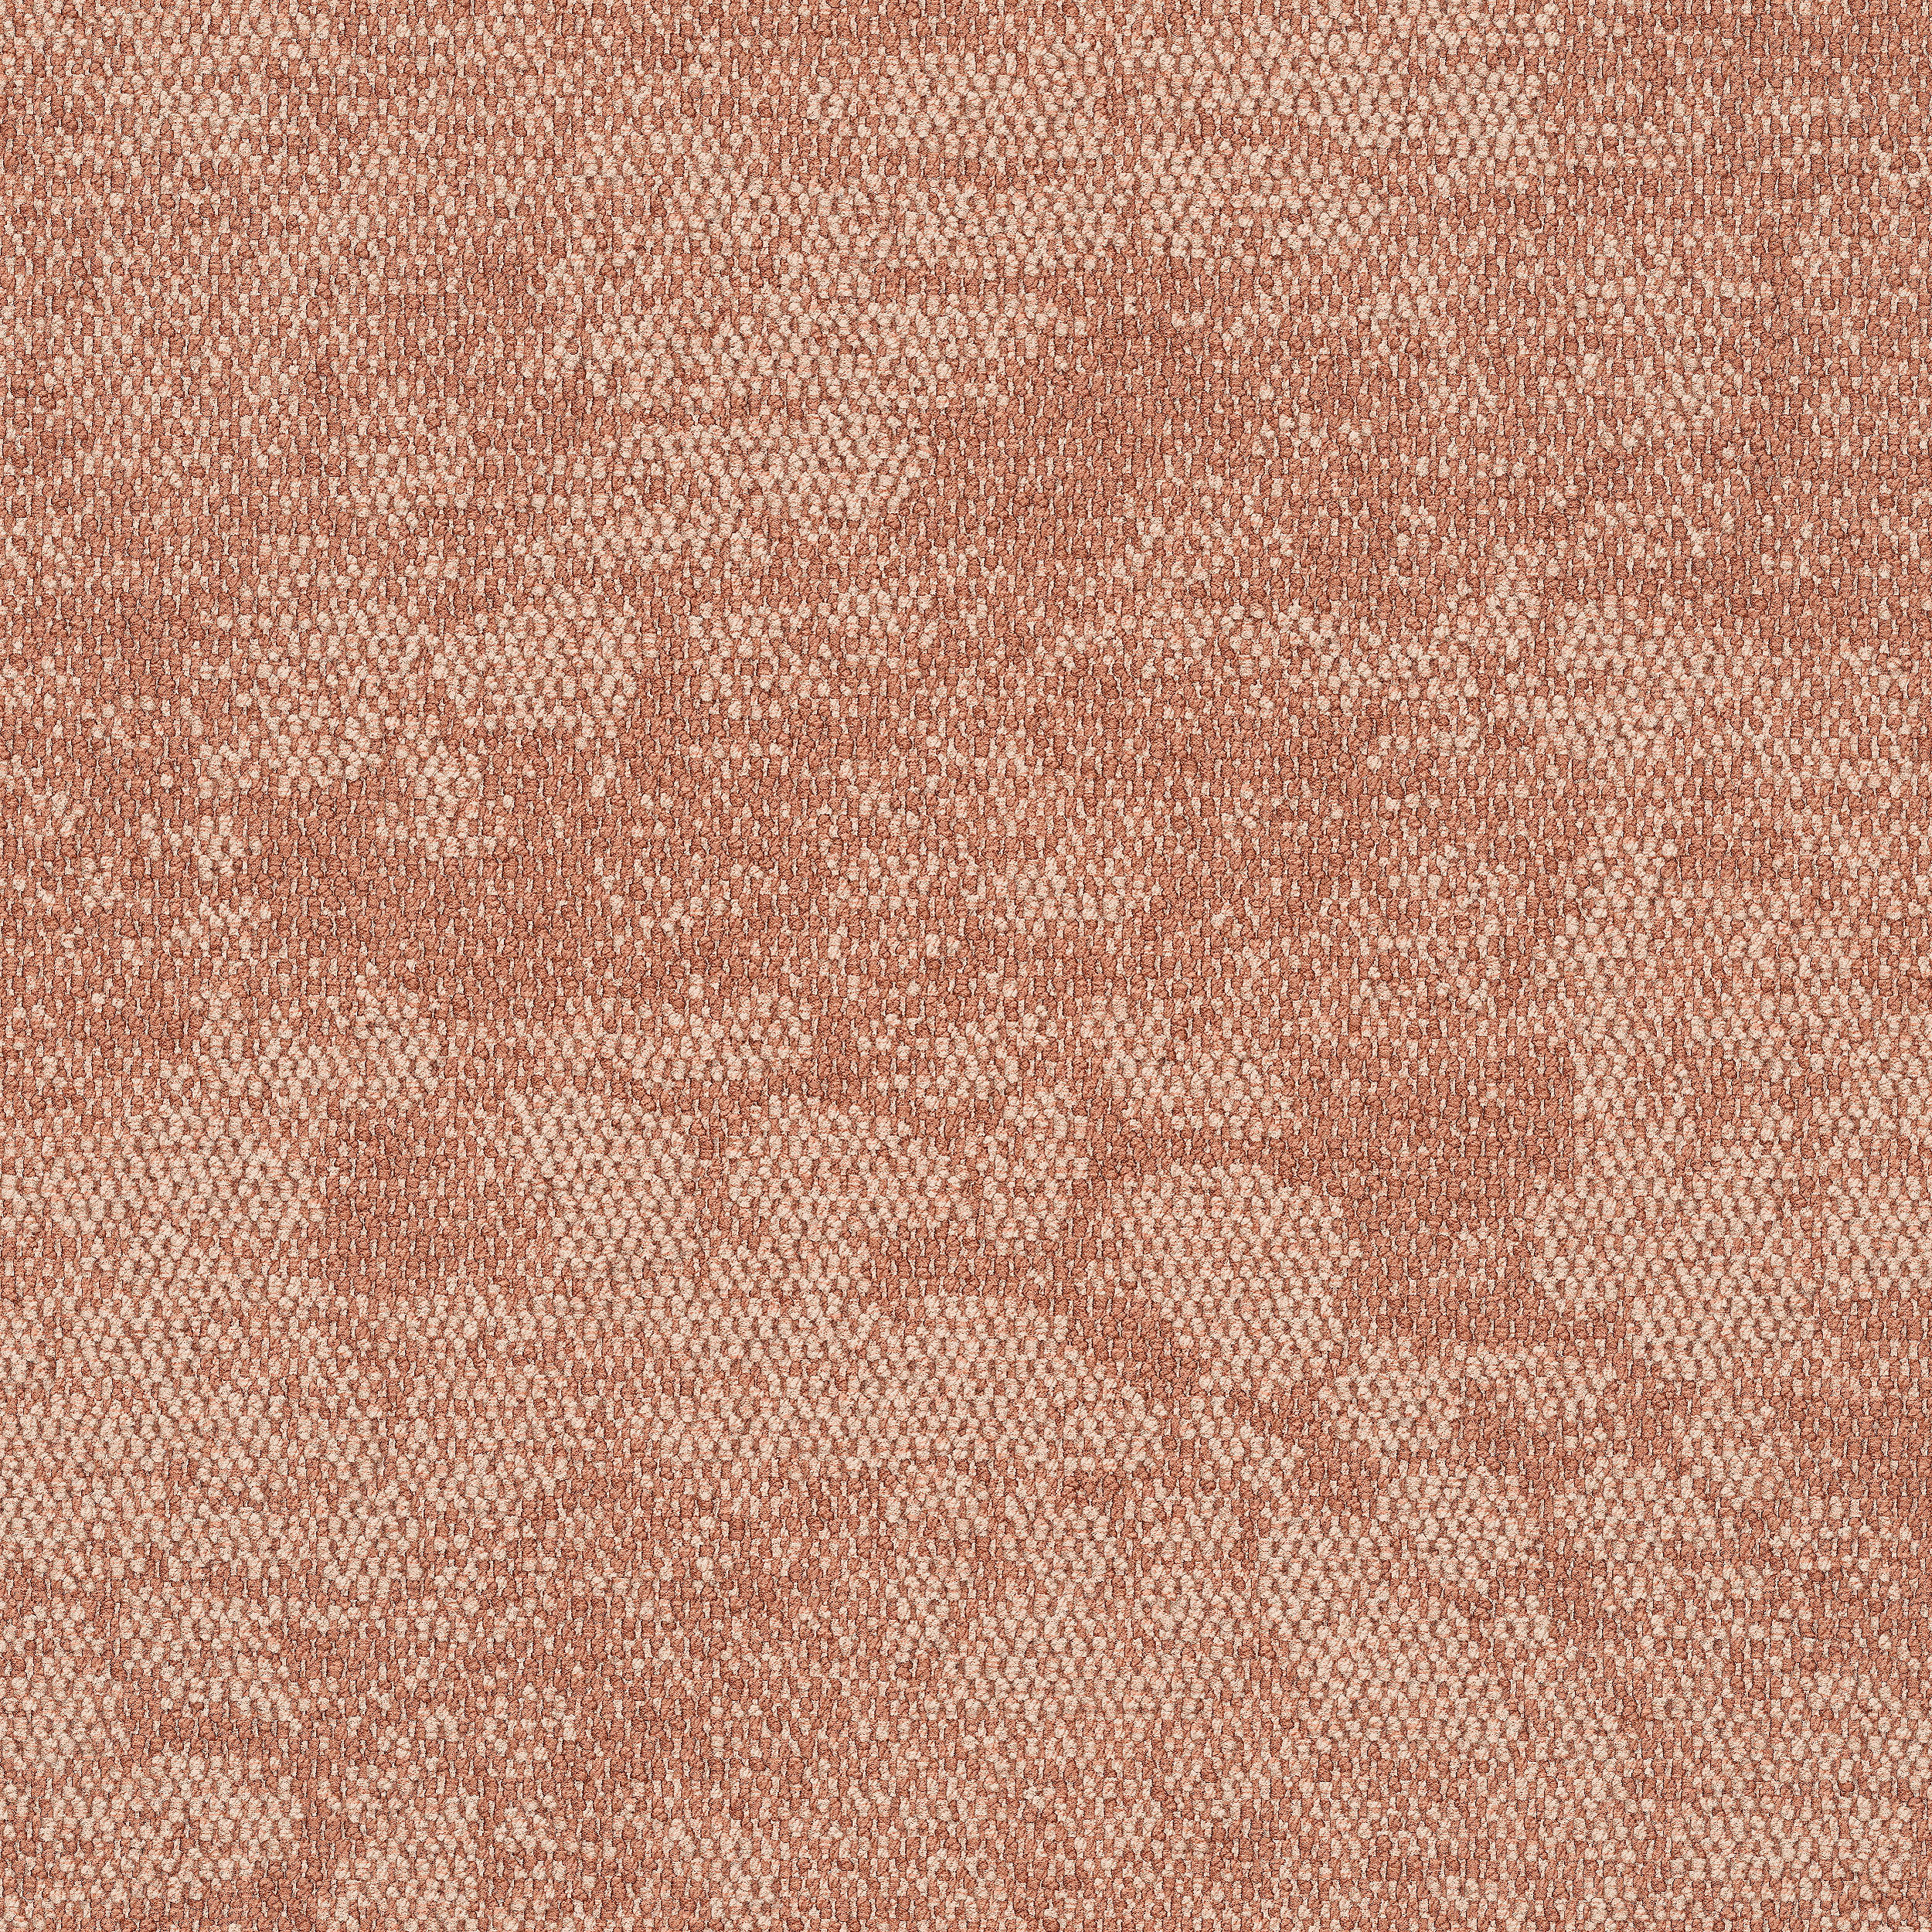 Escarpment carpet tile in Desert Sands Bildnummer 11